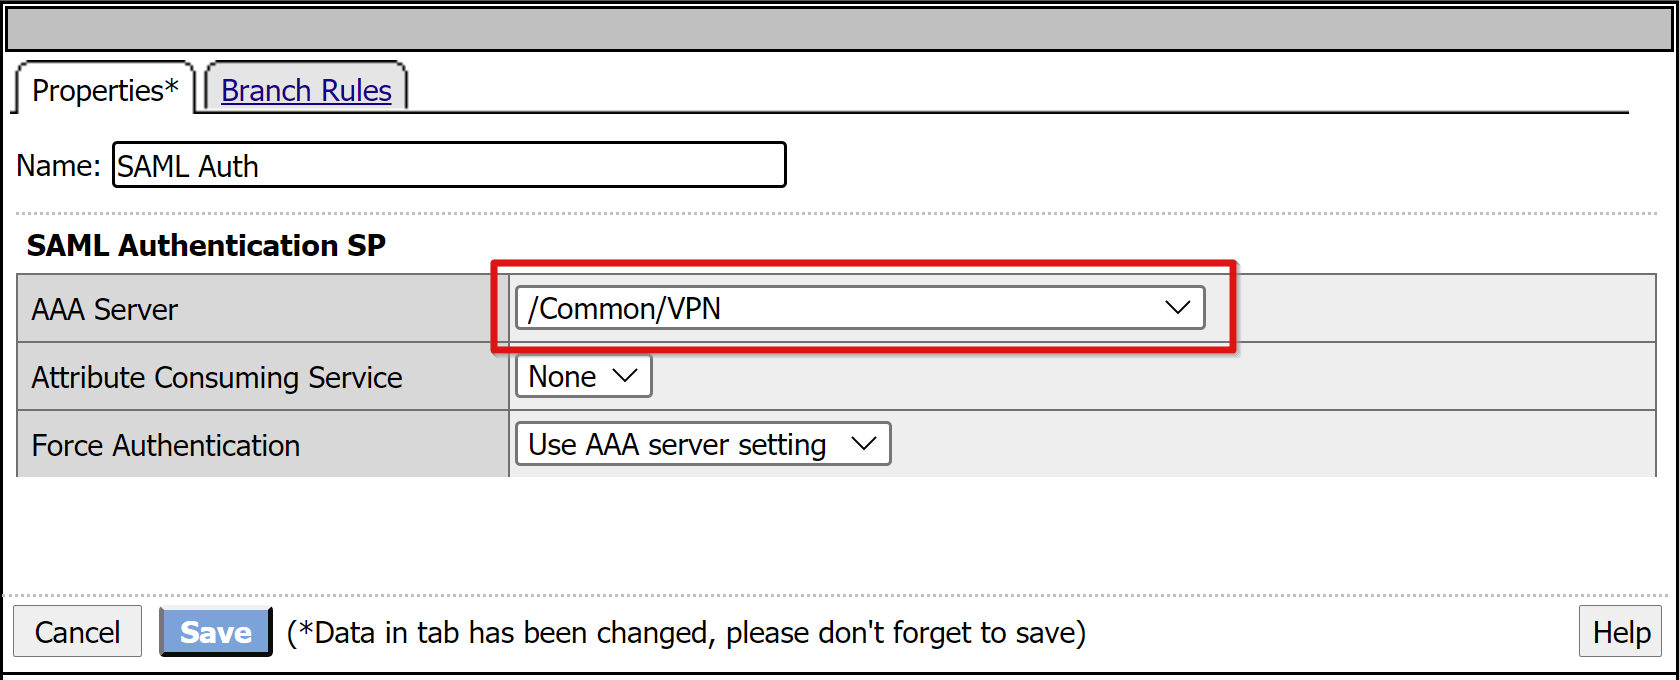 Captura de pantalla de la entrada del servidor AAA en el proveedor de servicios de autenticación de SAML, en la pestaña de propiedades.